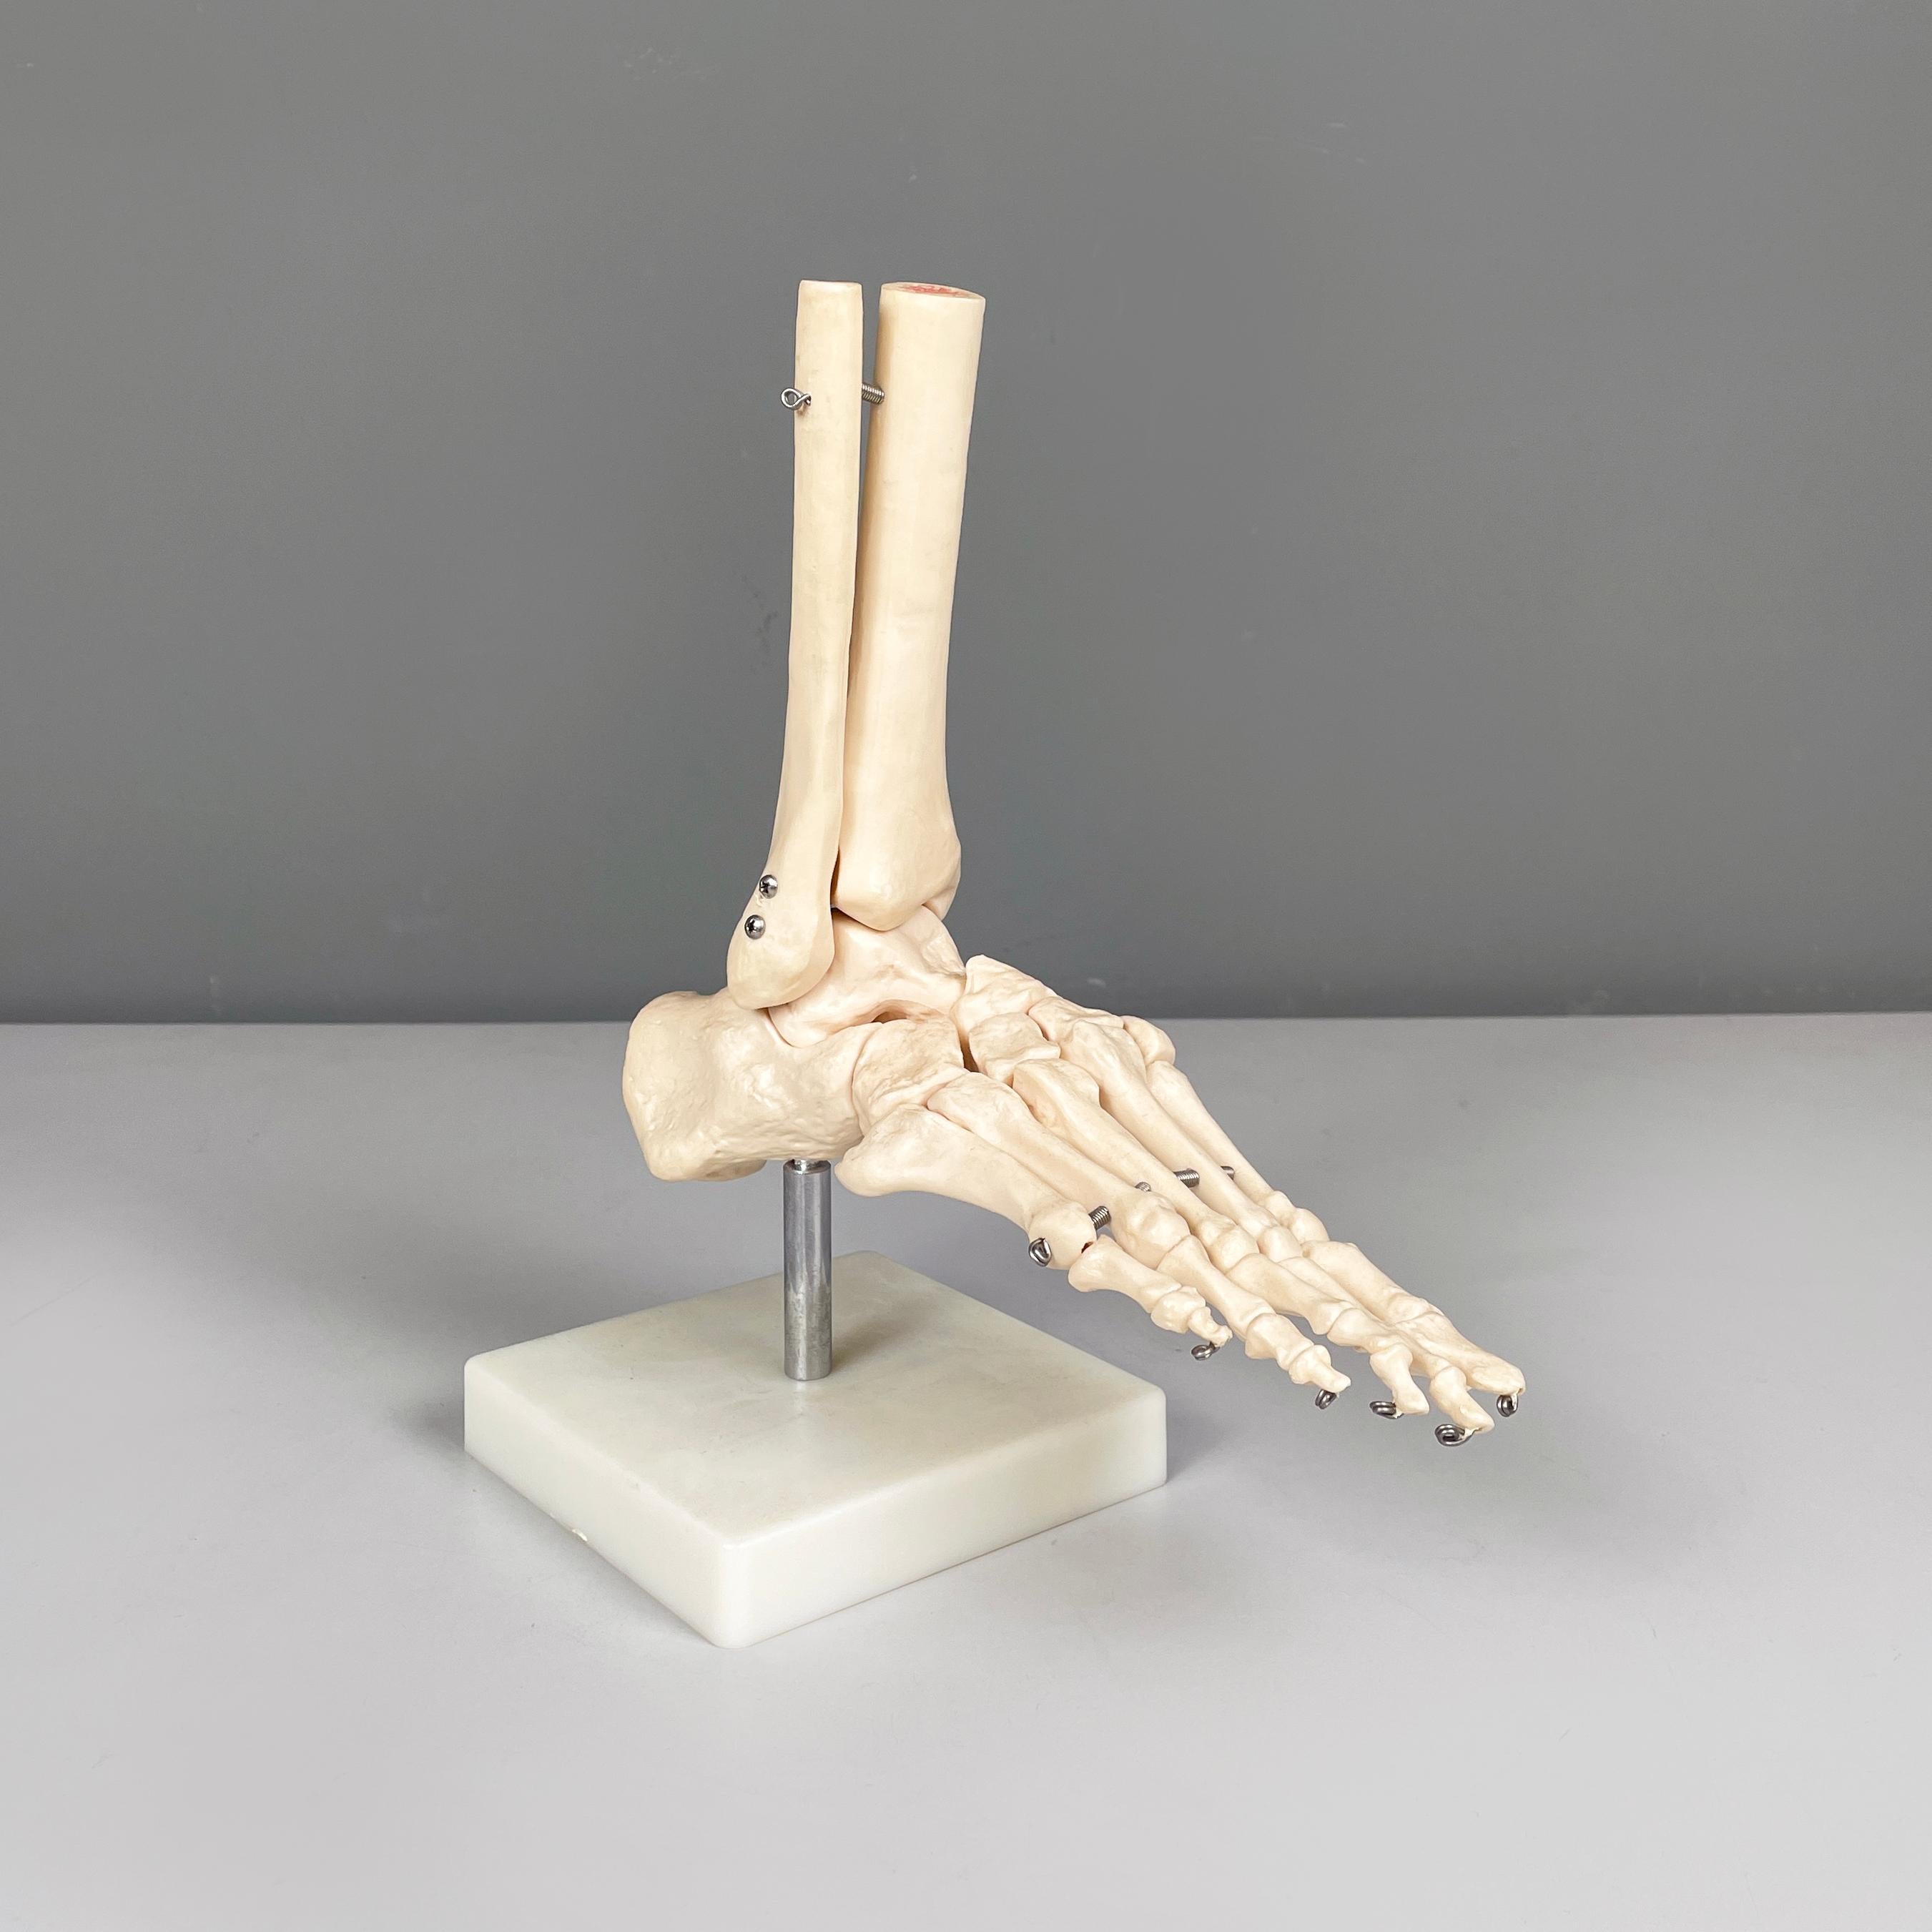 Italienisches modernes wissenschaftliches anatomisches Modell der Fußknochen aus Kunststoff, 2000er Jahre
Wissenschaftliches anatomisches Modell des Fußes und der Knöchel, aus weiß-beigem Kunststoff. Die verschiedenen Knochen sind durch kleine